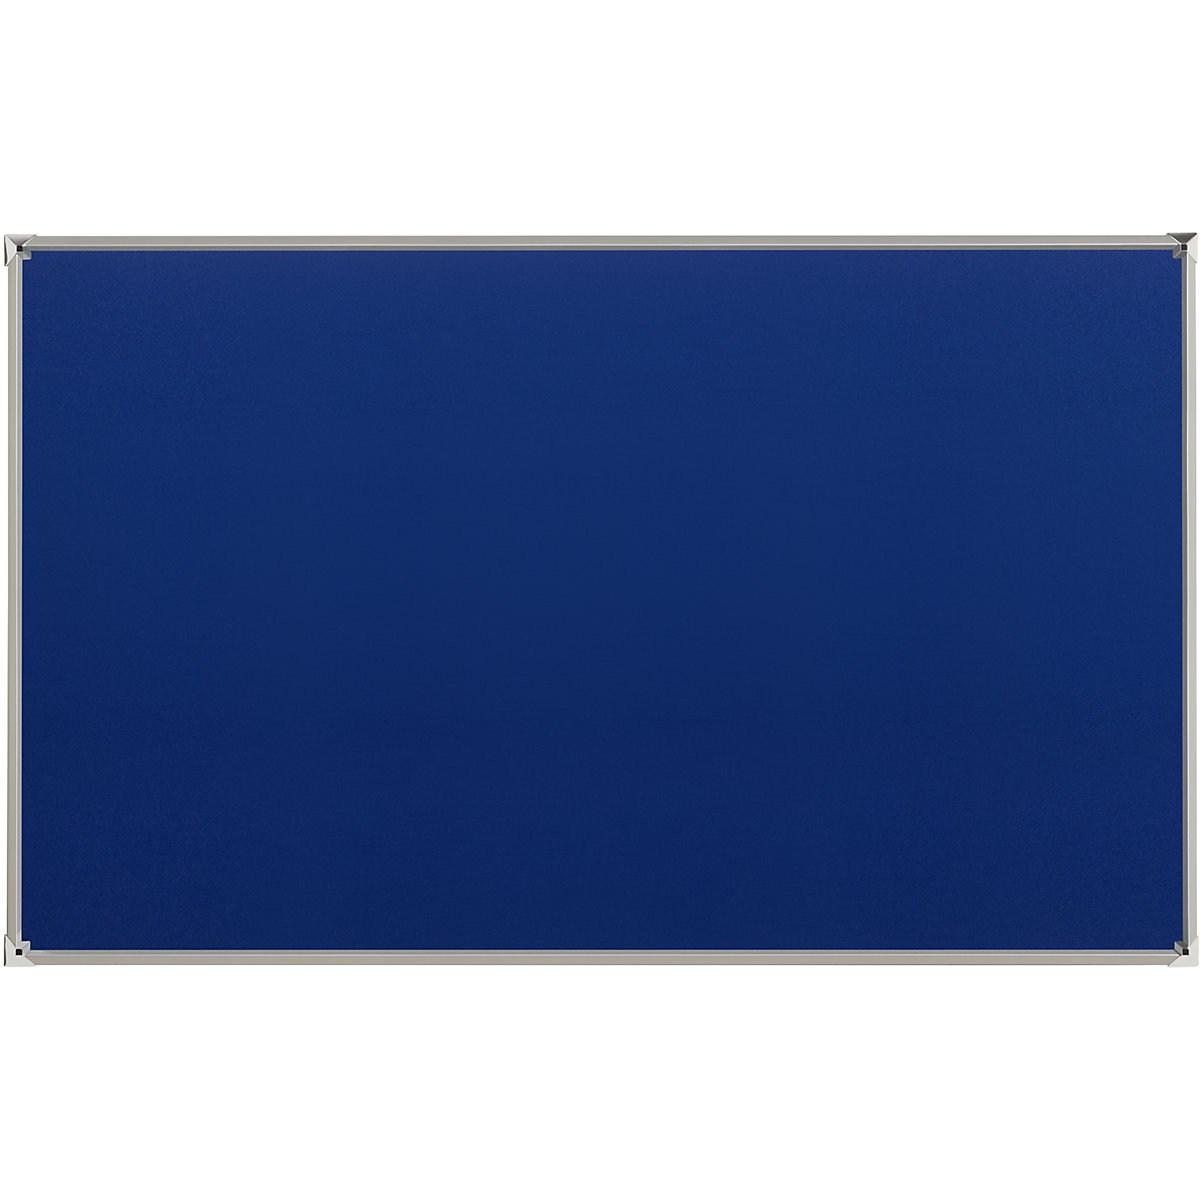 Jelölőtűs fal alumínium kerettel – eurokraft pro, kék szövetkárpit, szé x ma 1800 x 1200 mm-4